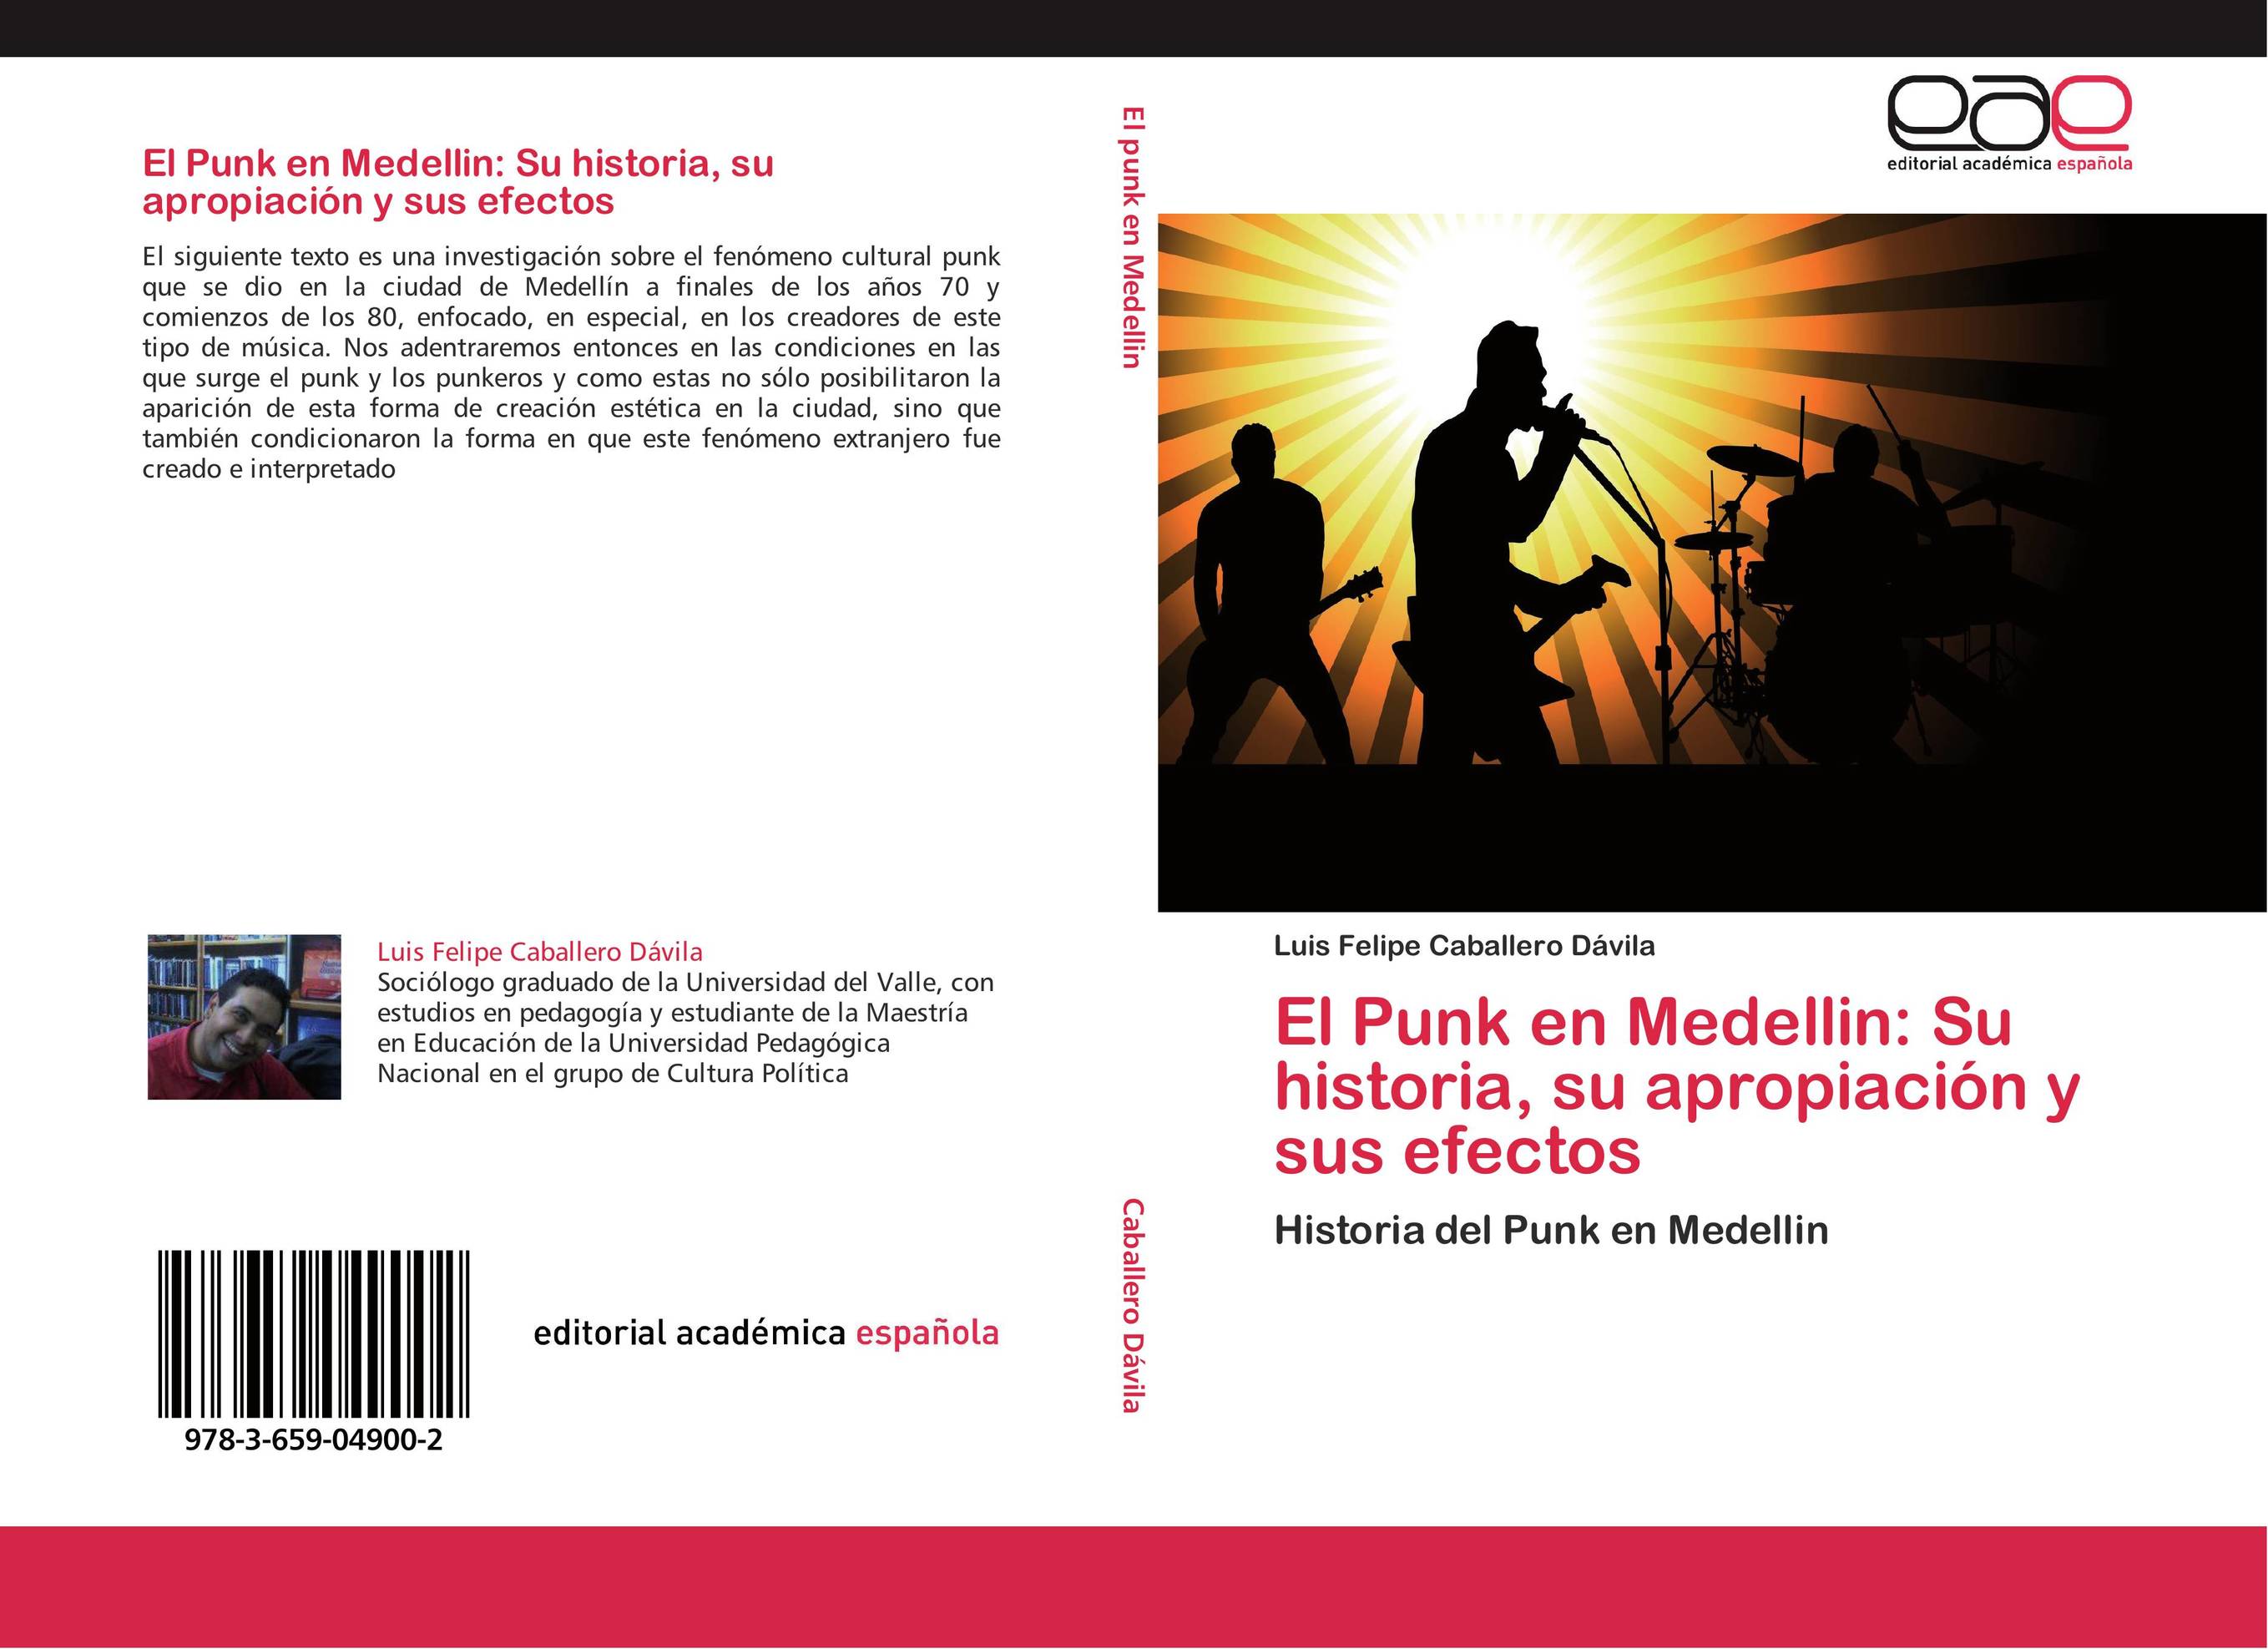 El Punk en Medellin: Su historia, su apropiación y sus efectos